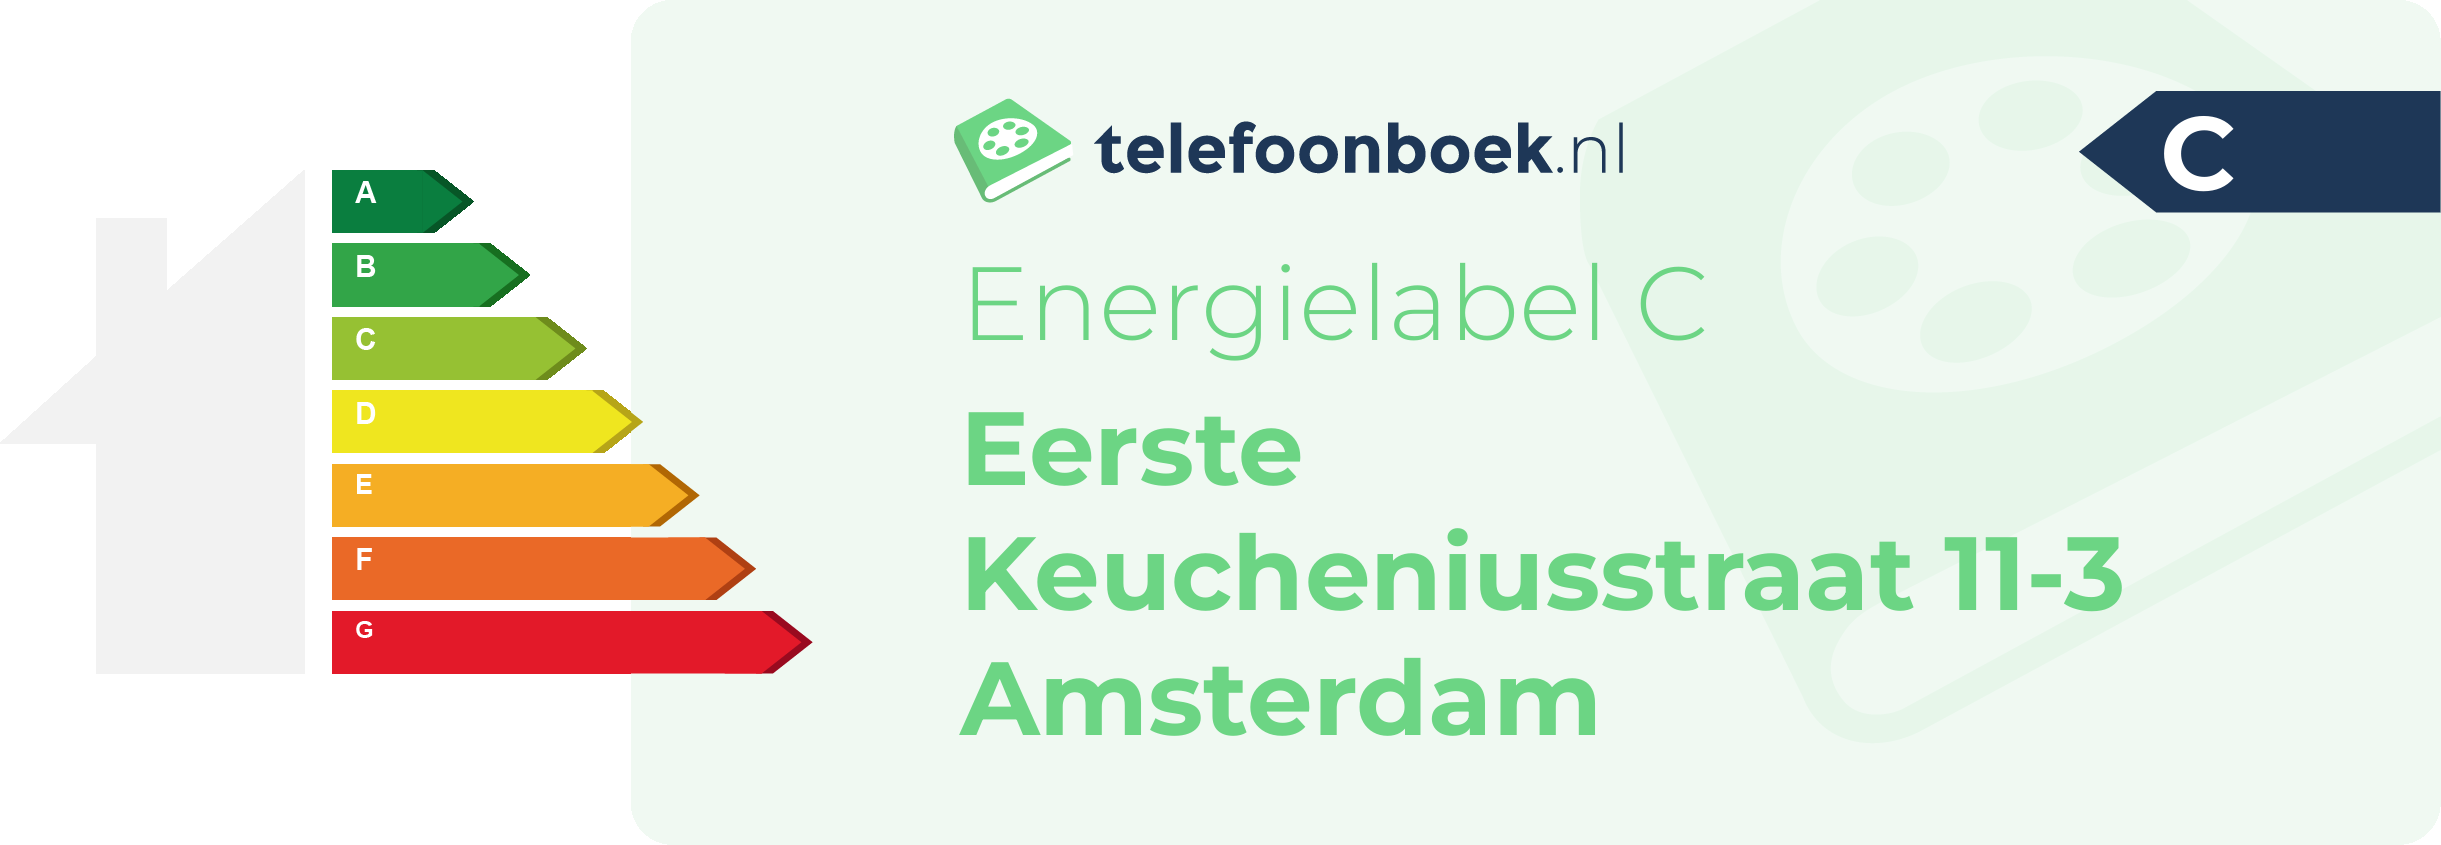 Energielabel Eerste Keucheniusstraat 11-3 Amsterdam